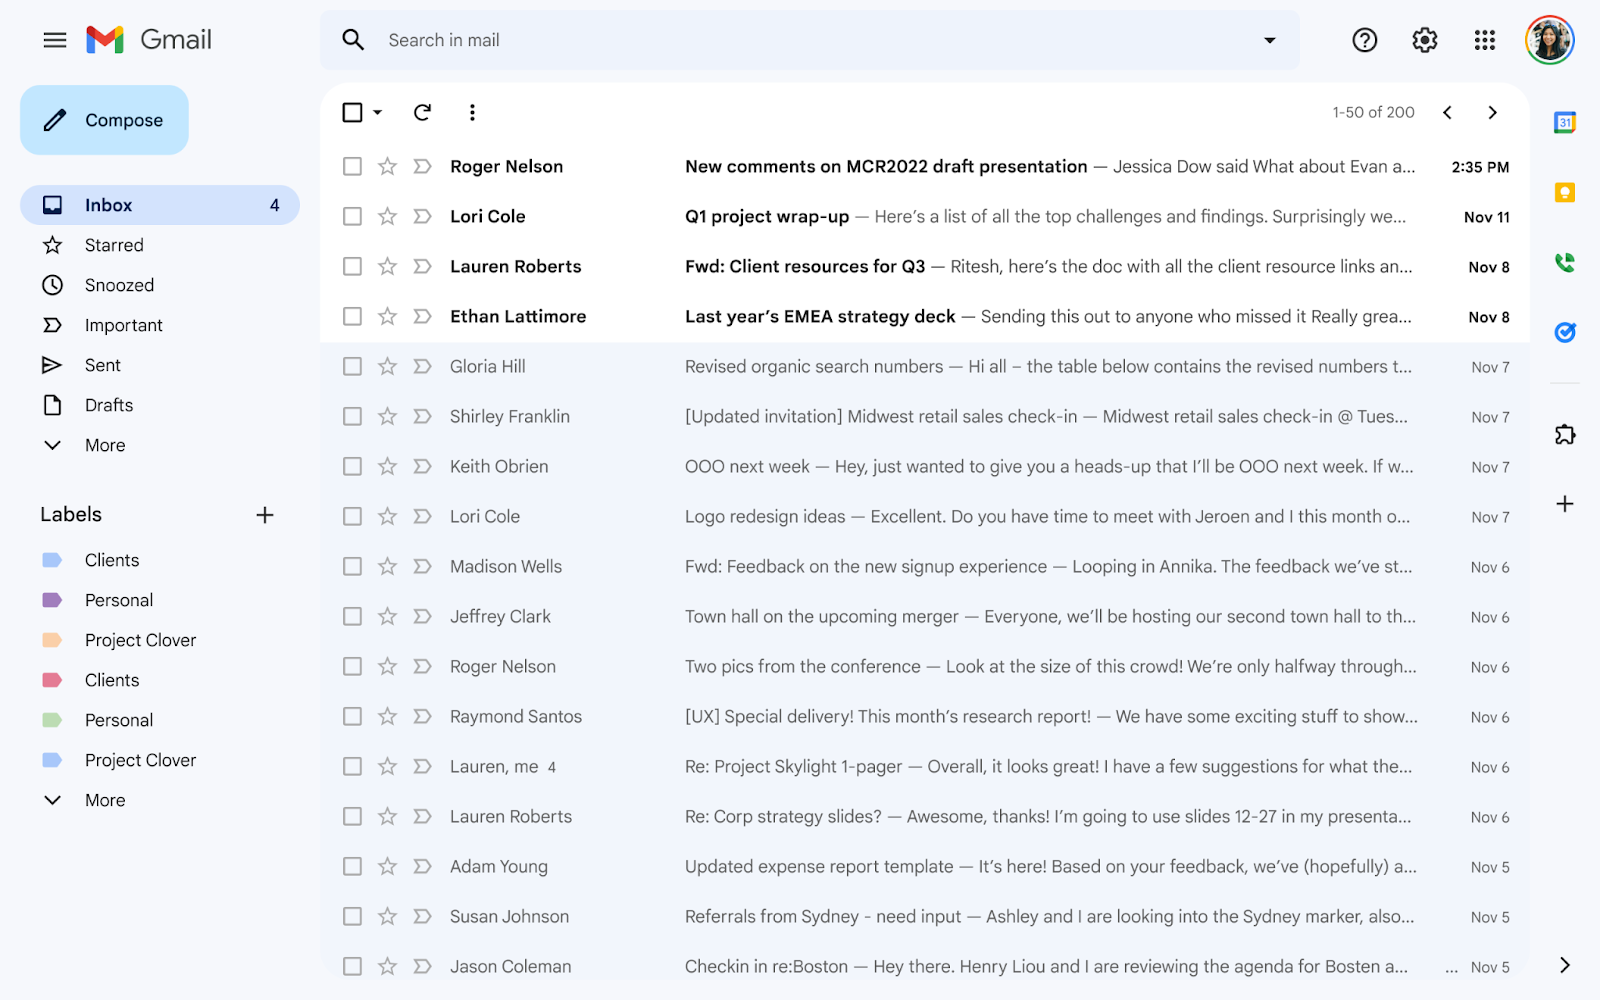 Uno sguardo al materiale di Gmail che sta ridisegnando per il Web [Gallery]